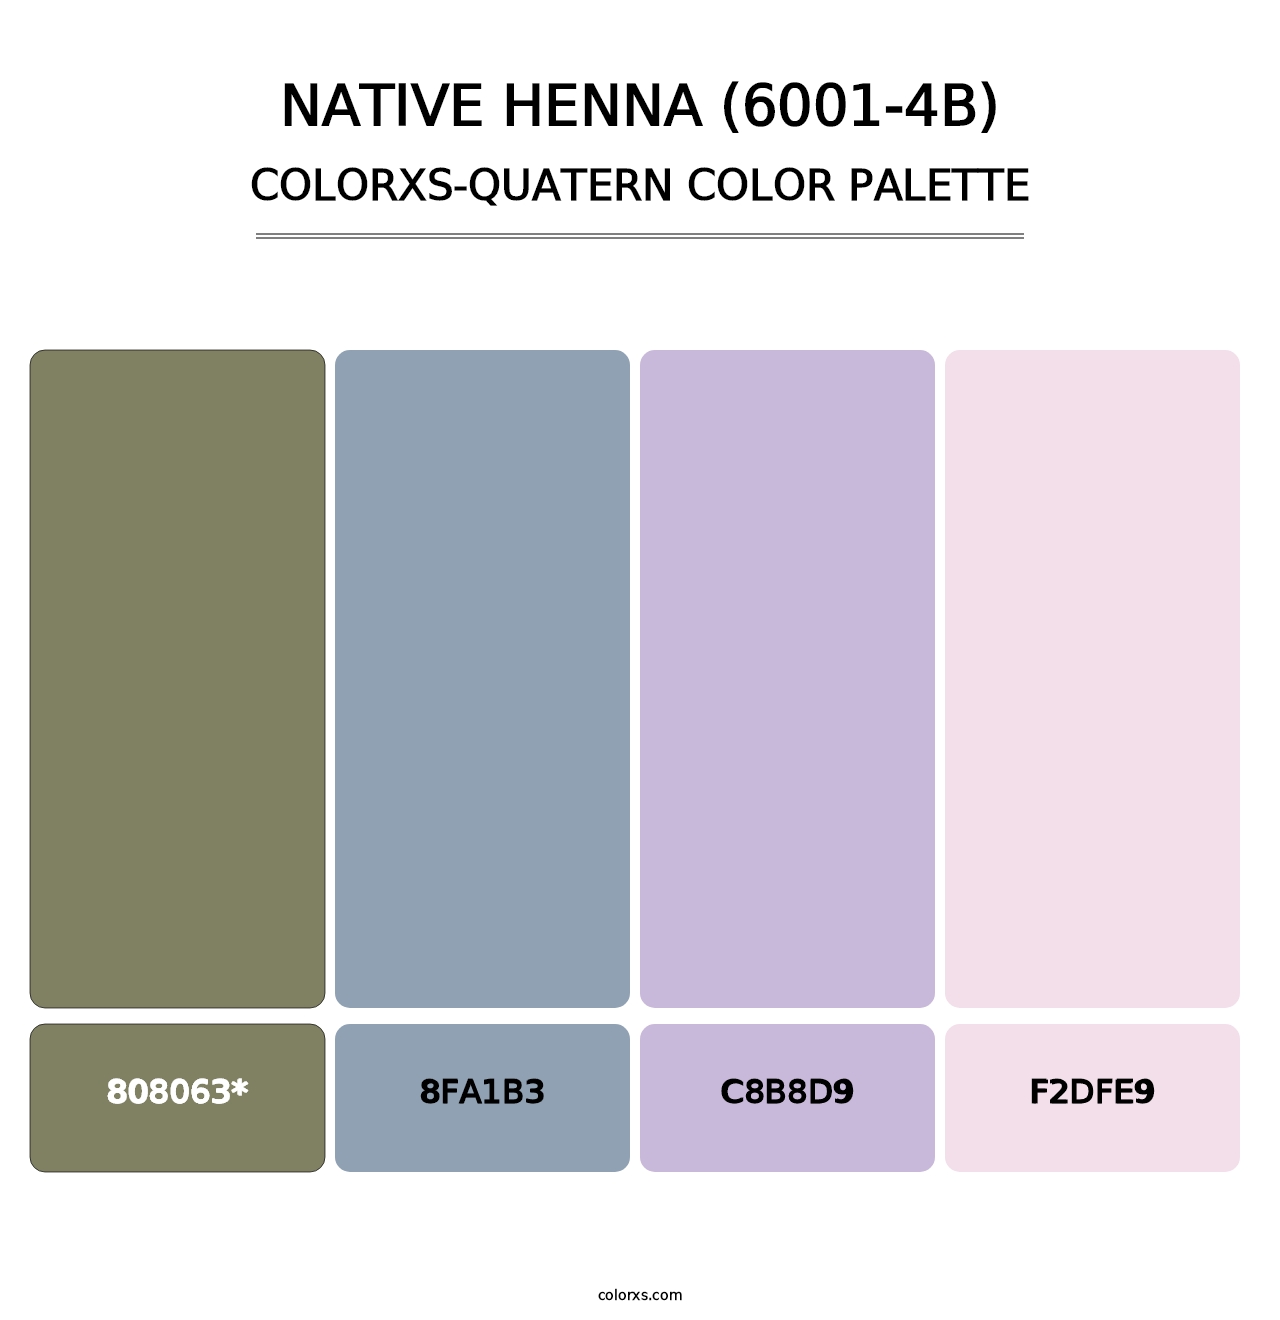 Native Henna (6001-4B) - Colorxs Quatern Palette